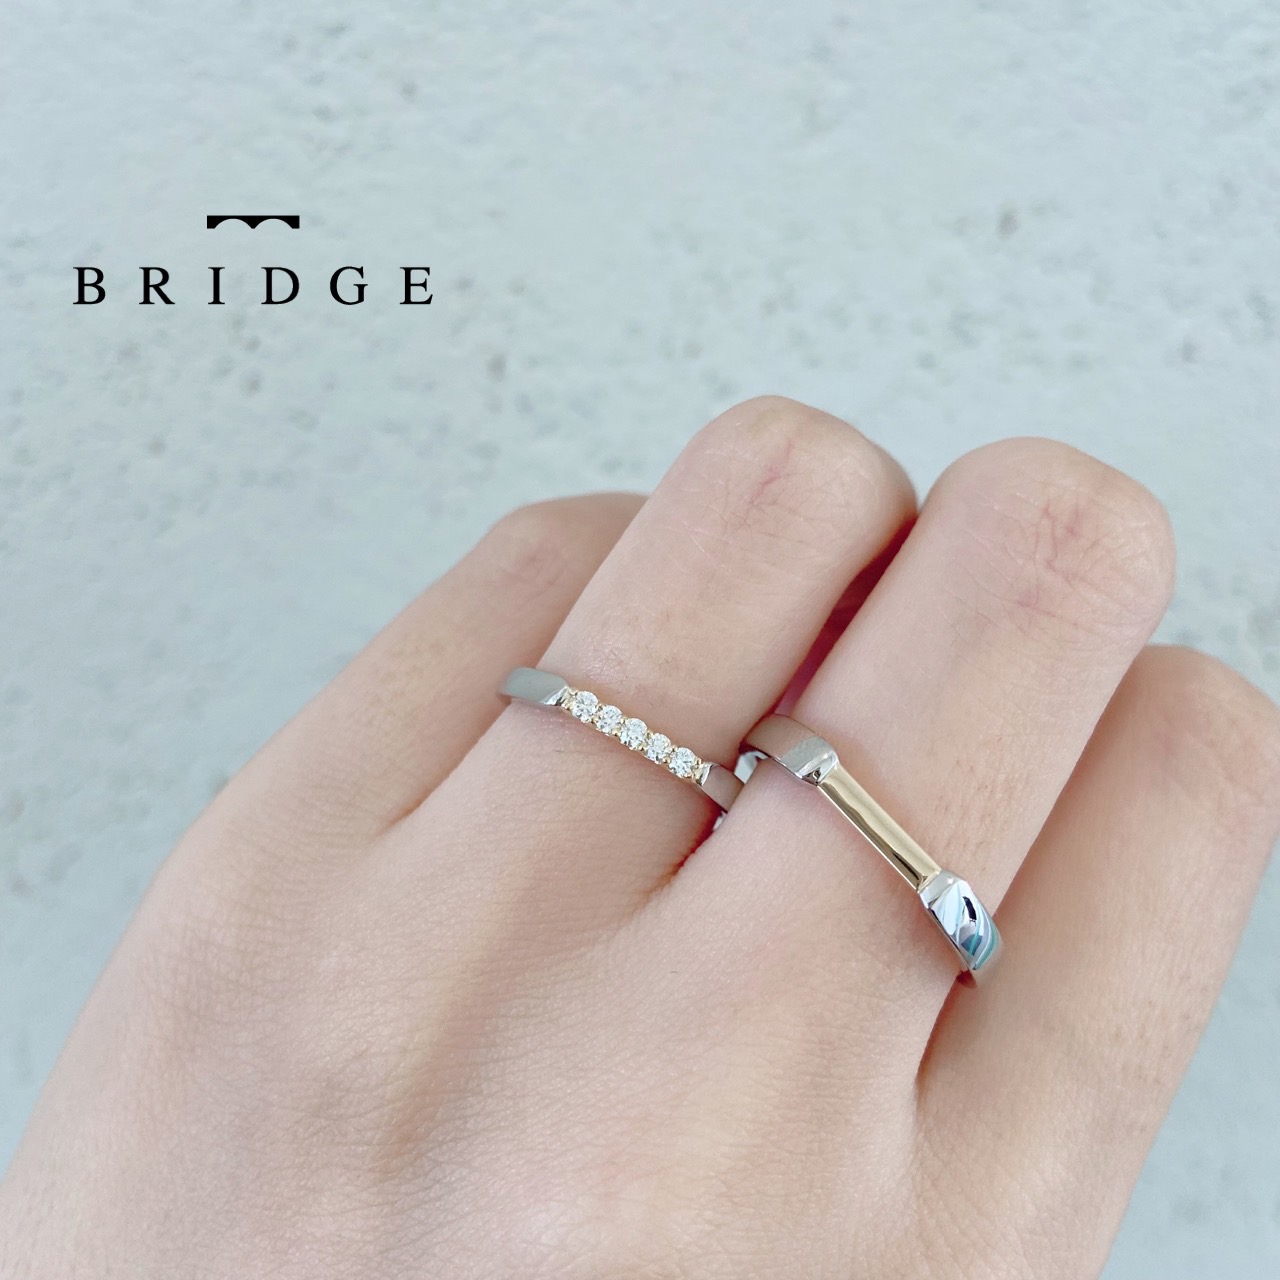 日本橋をモチーフにした結婚指輪にはここかは初めて行こうという決意が込められている